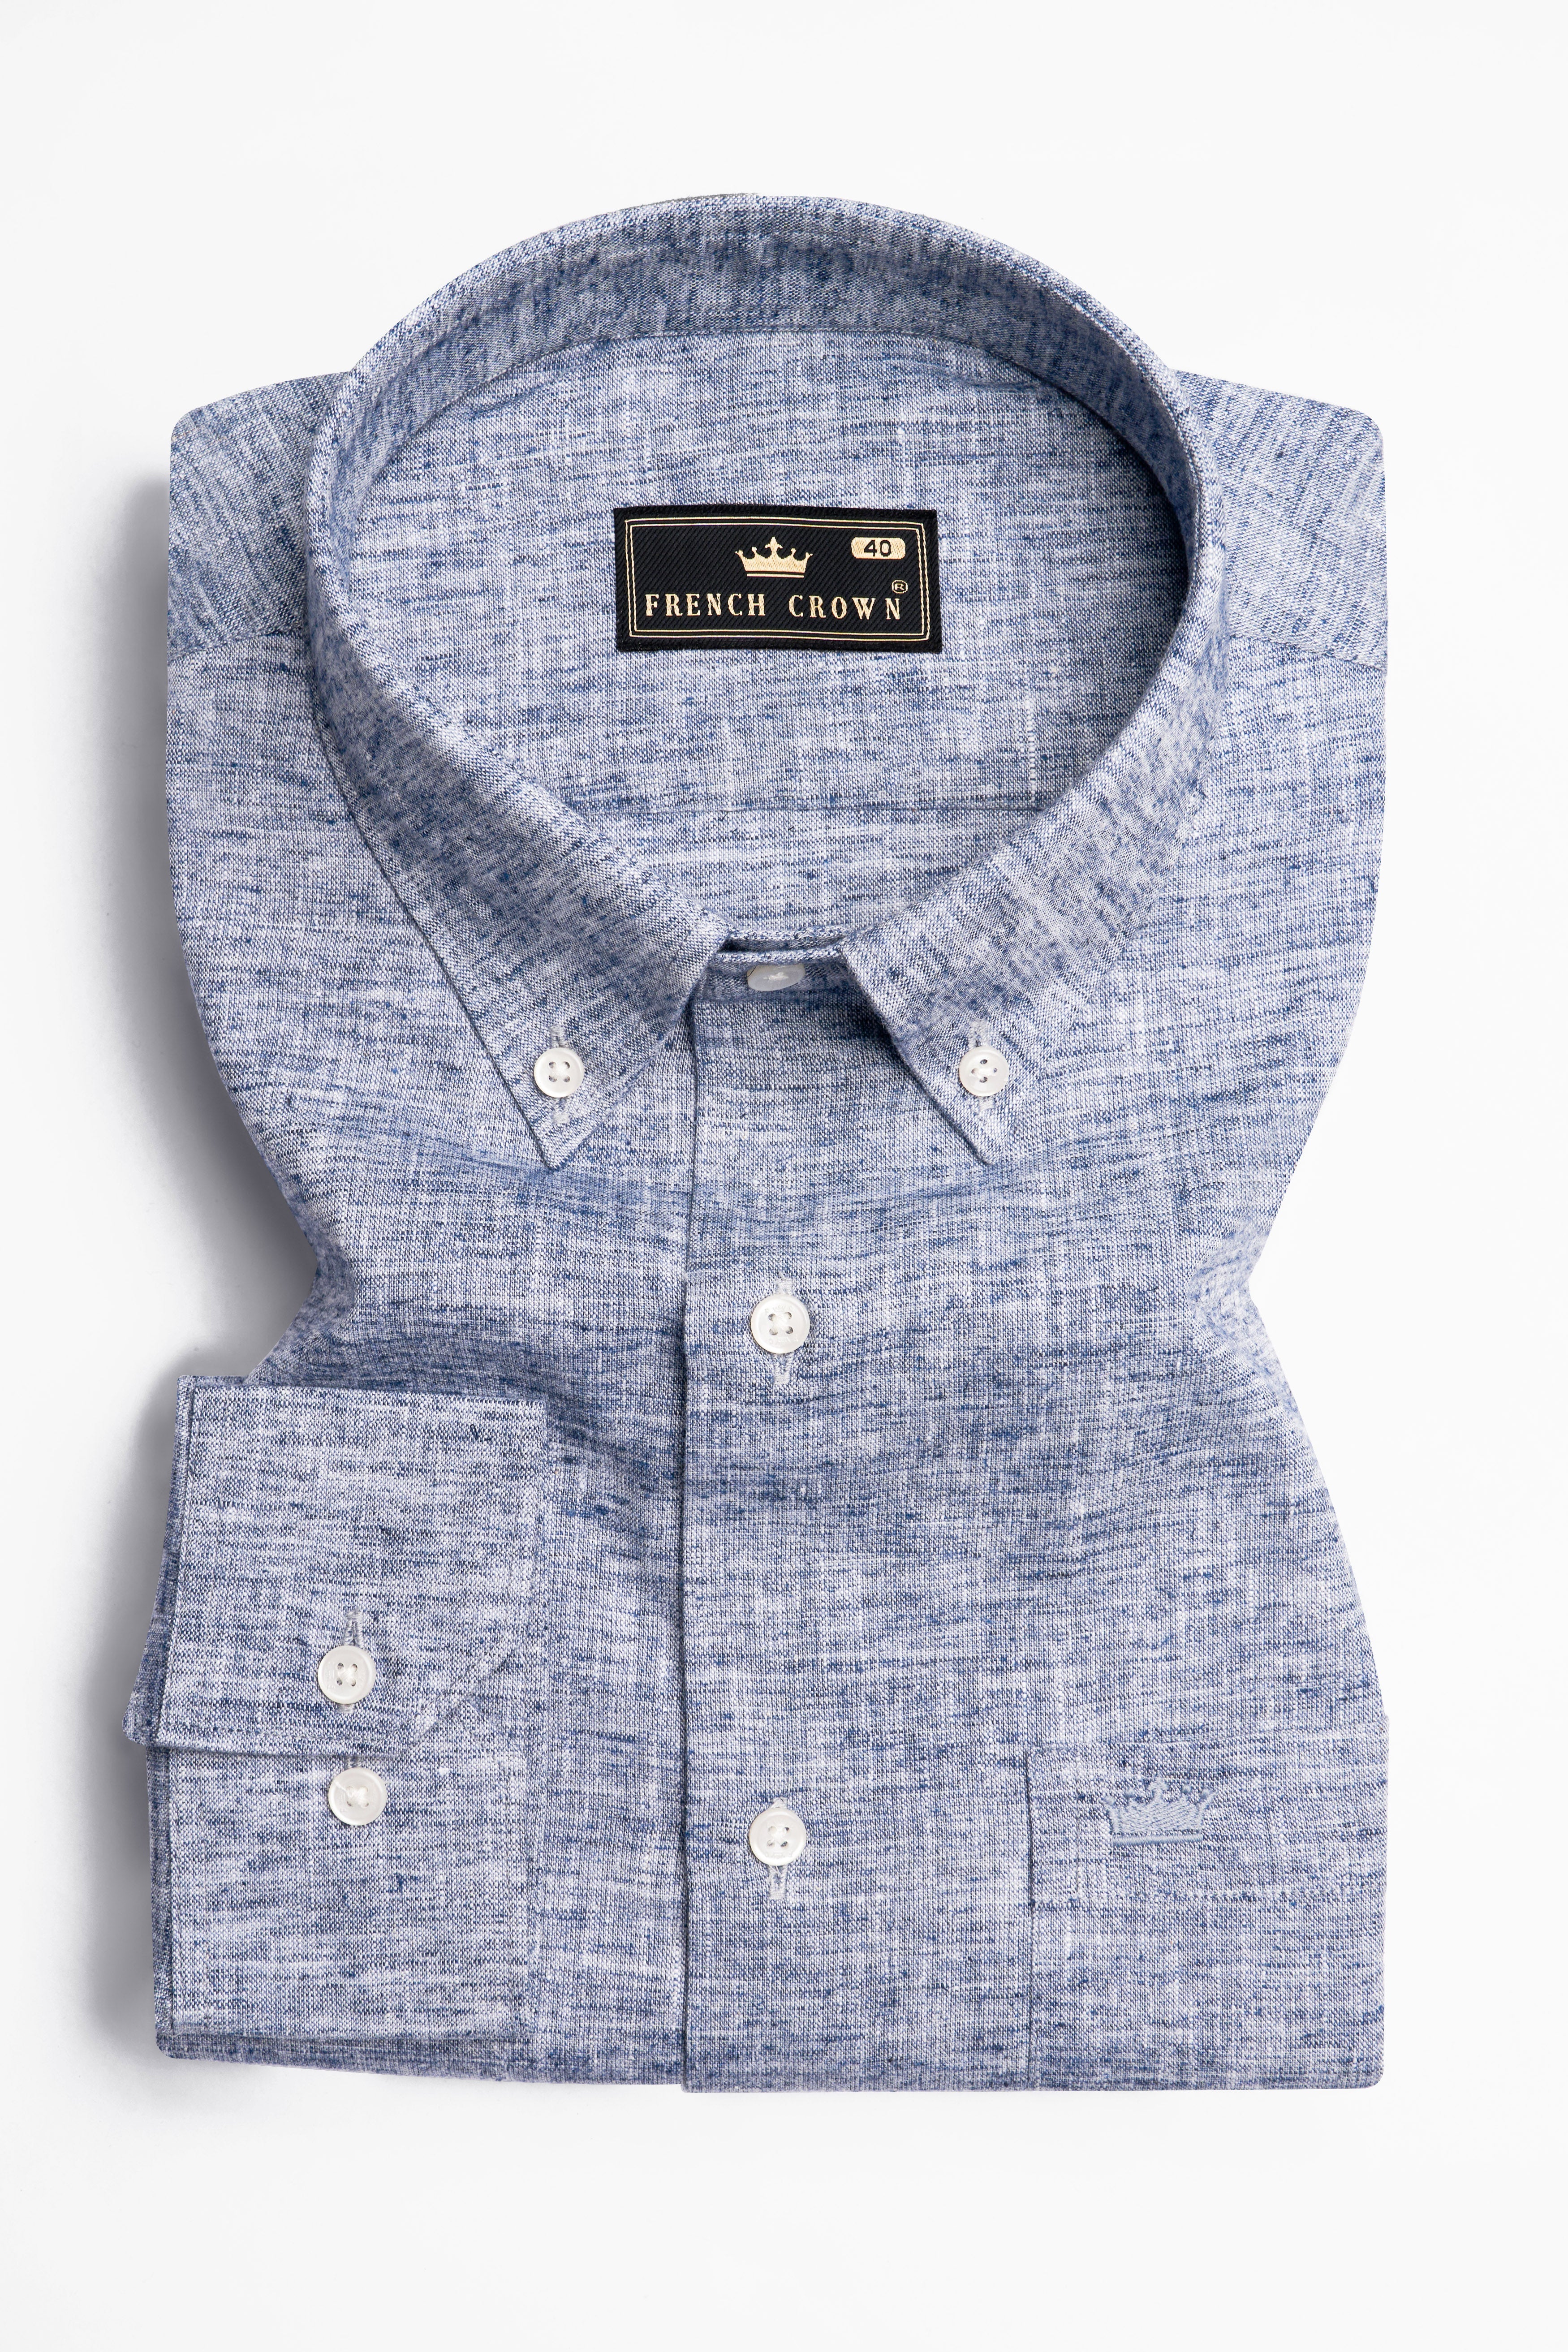 Cadet Gray Luxurious Linen Button-Down Shirt